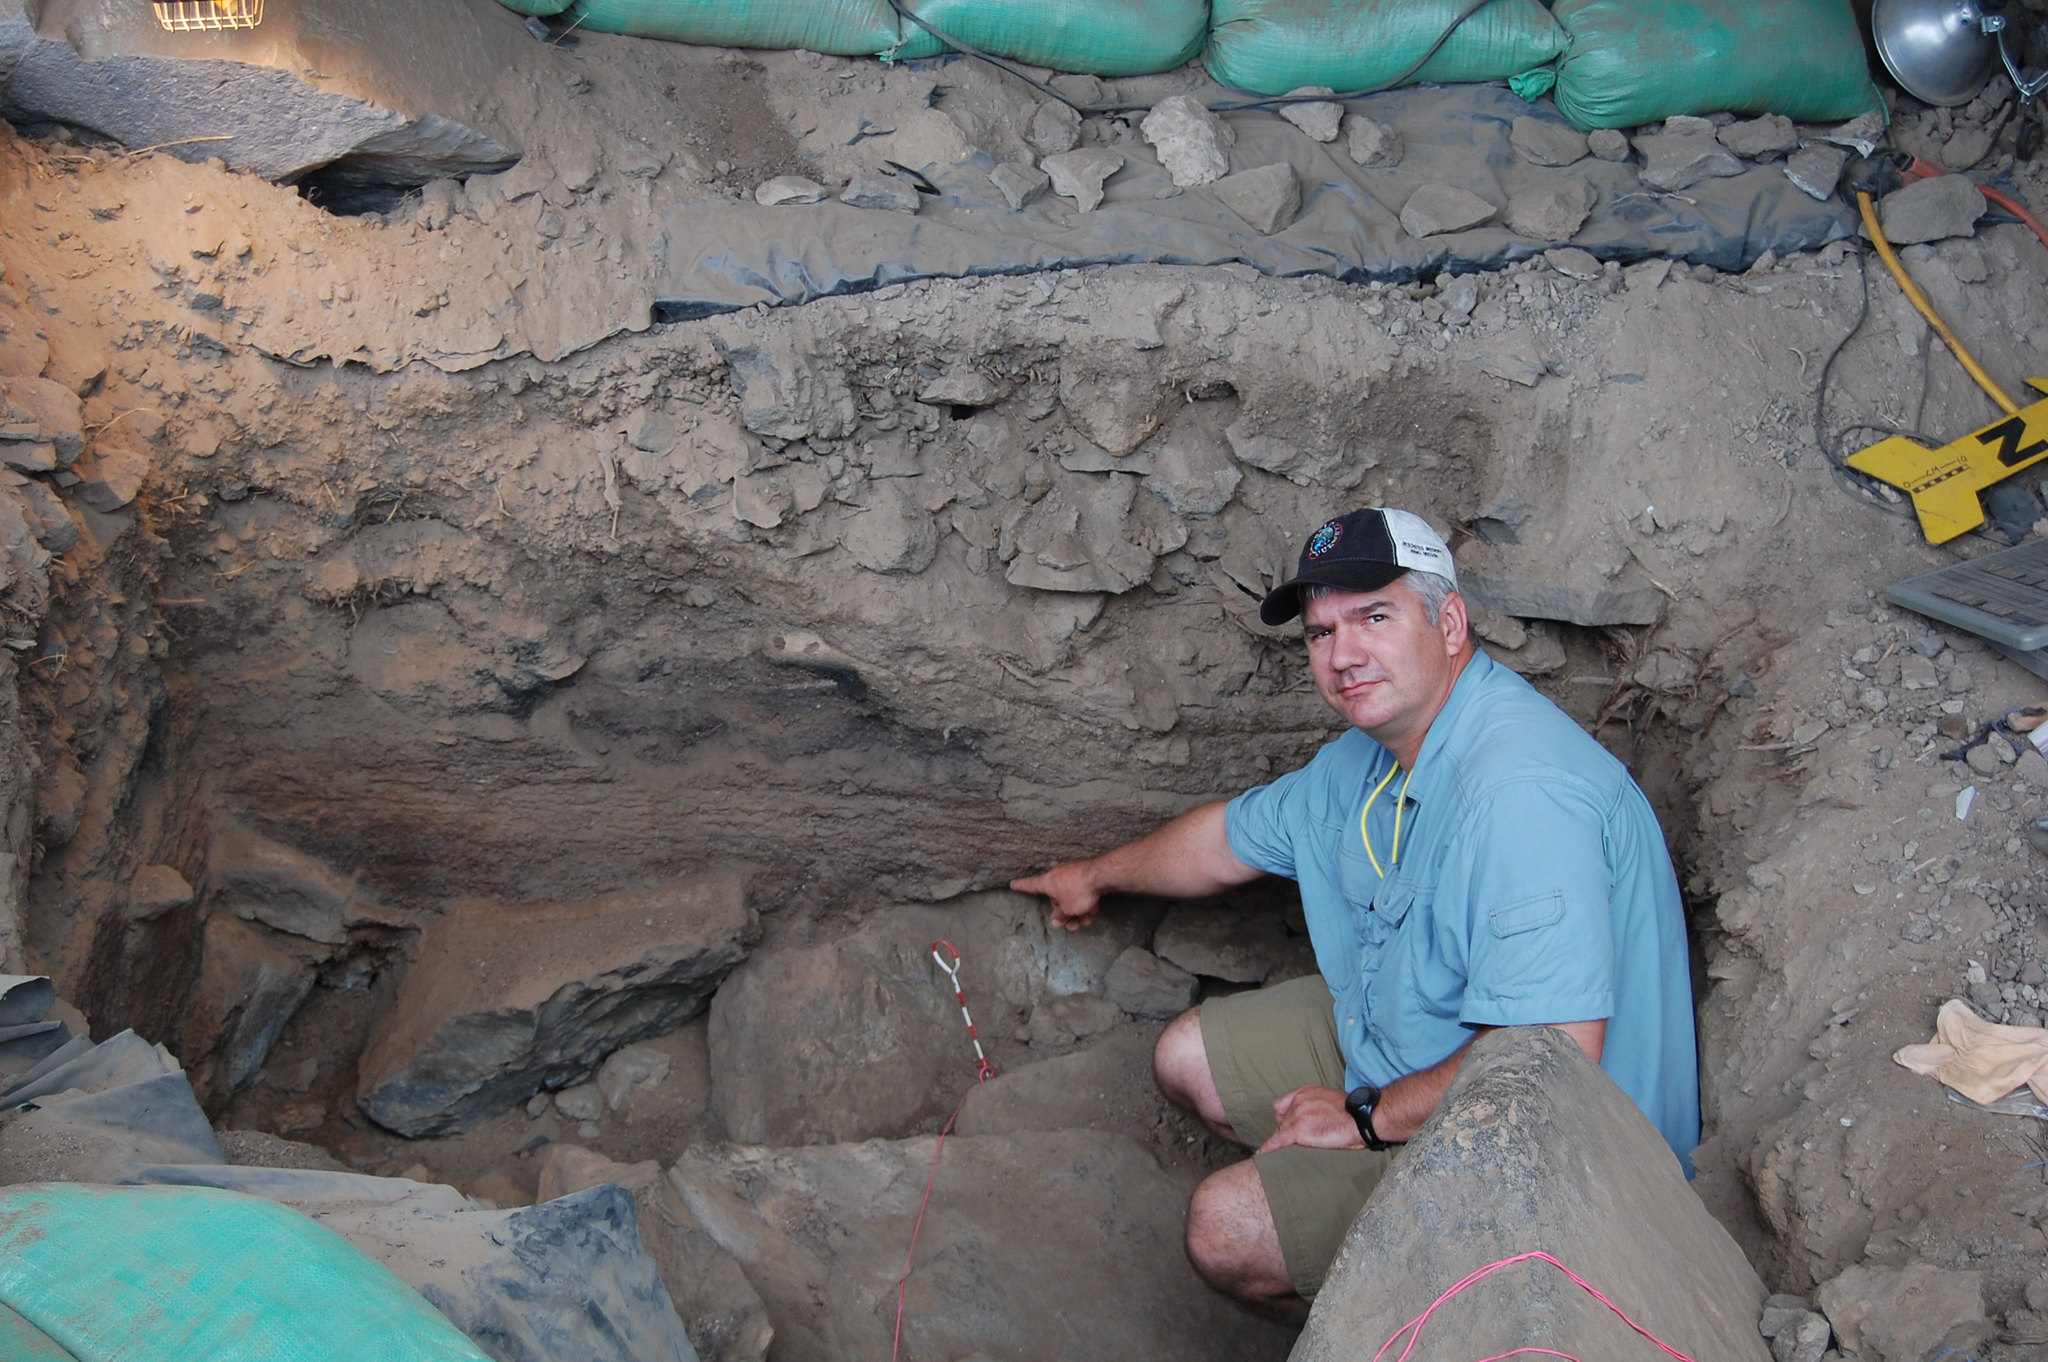 A régészek megtalálják a legkorábbi ismert észak-amerikai települést 3